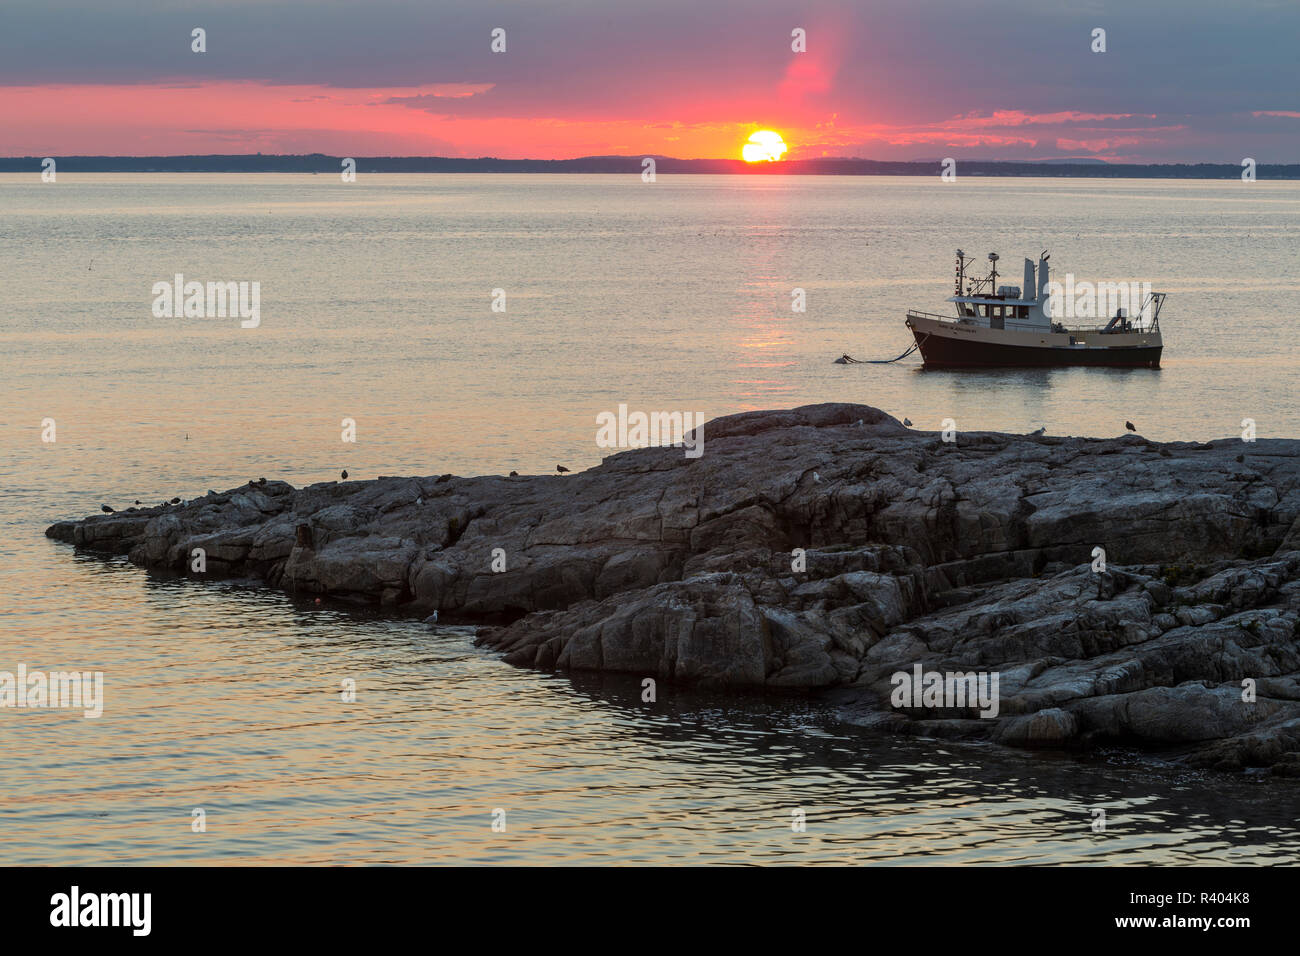 Bateau de pêche au coucher du soleil. L'île de Appledore, Maine. Banque D'Images